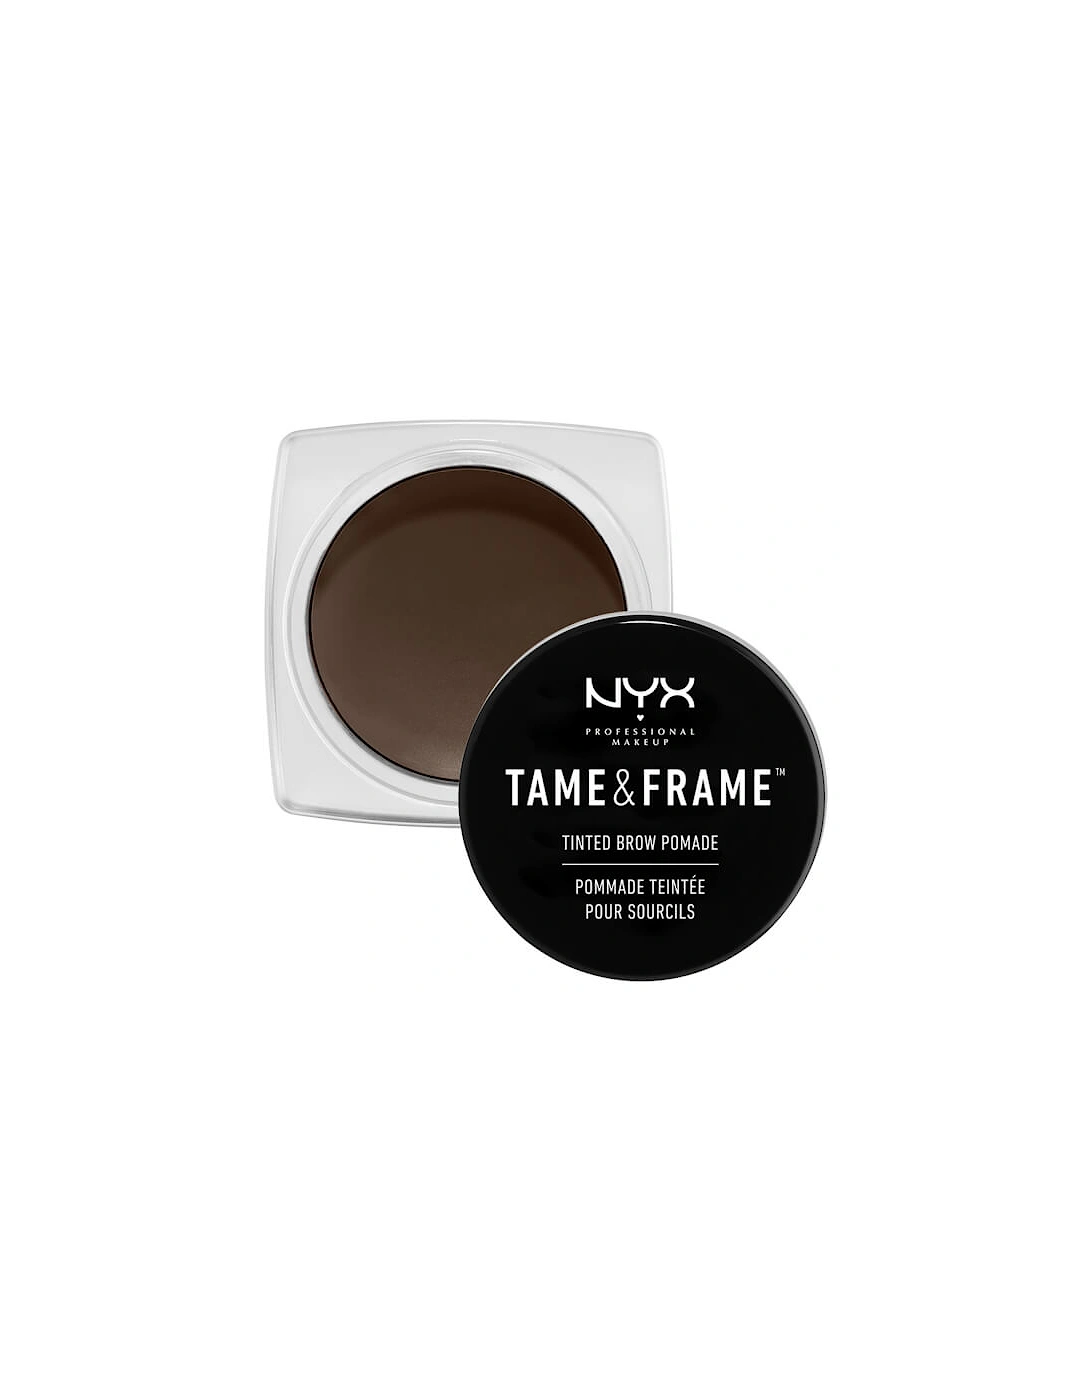 Tame & Frame Tinted Brow Pomade - Espresso, 2 of 1